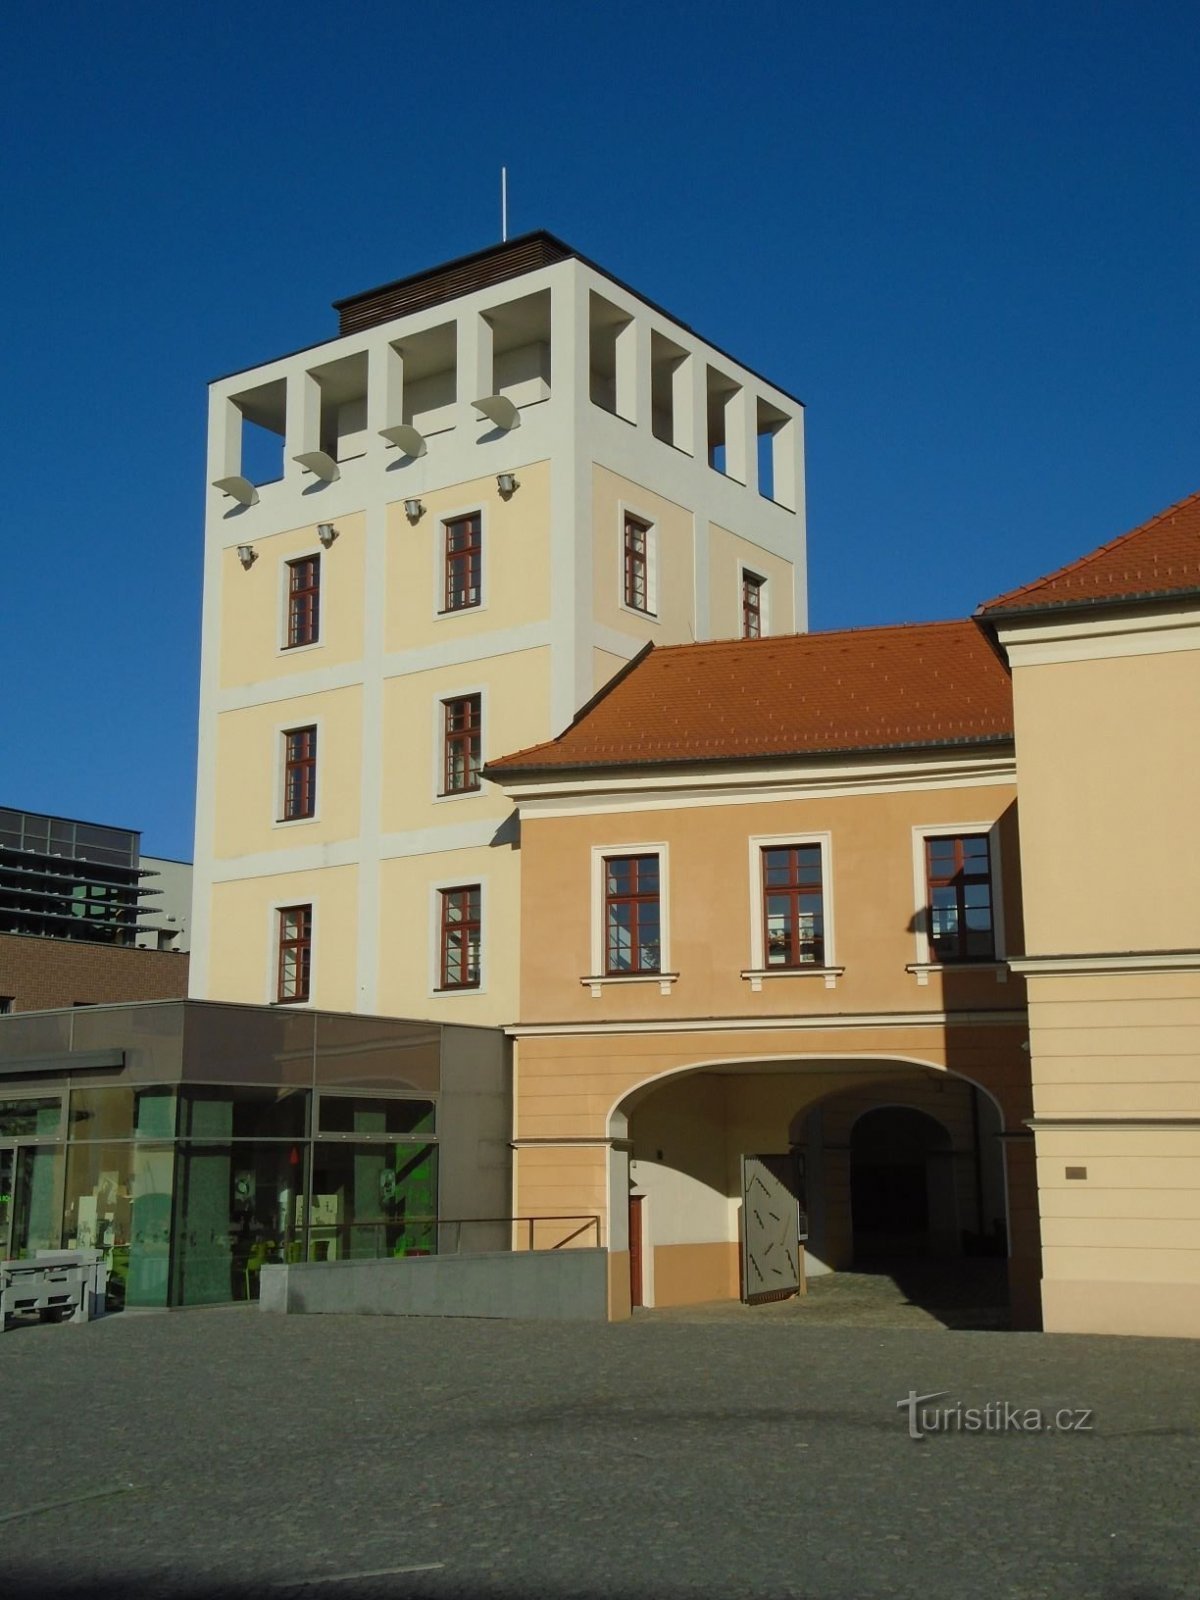 Ο πρώην υδάτινος πύργος Kozinka (Hradec Králové, 17.11.2018/XNUMX/XNUMX)